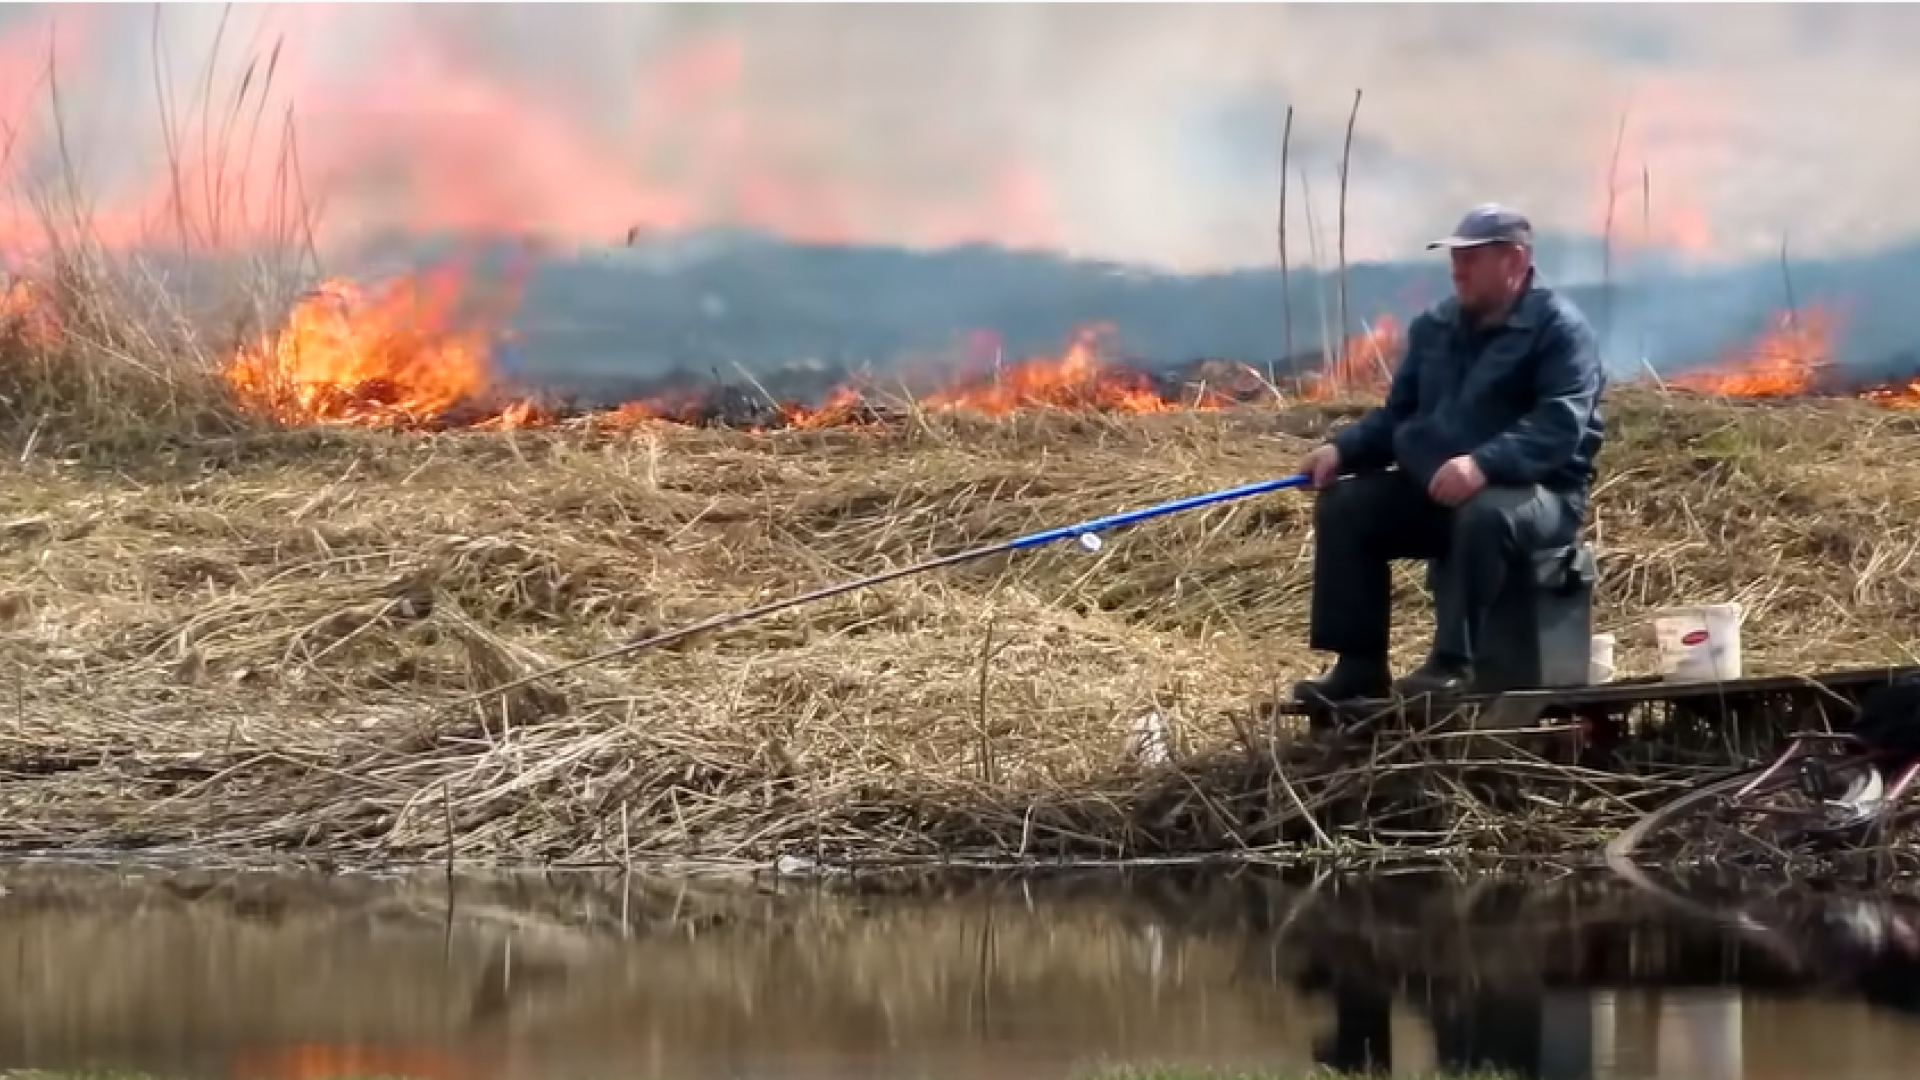 Un bărbat pescuia liniștit în timp ce câmpul ardea în spatele lui. ”Nu e nimic nou aici”